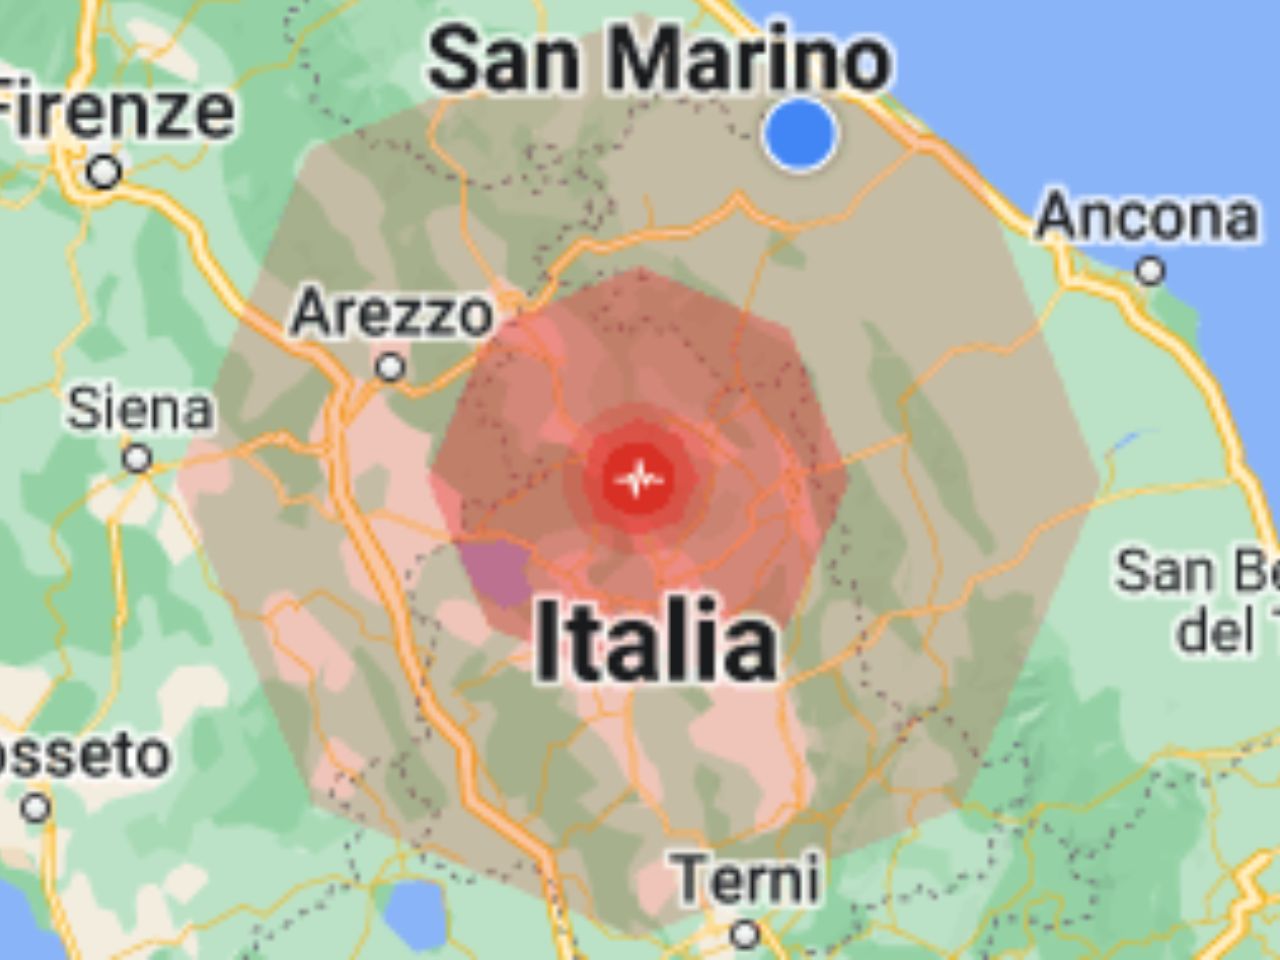 La terra trema: terremoto nel centro Italia di magnitudo 4.4